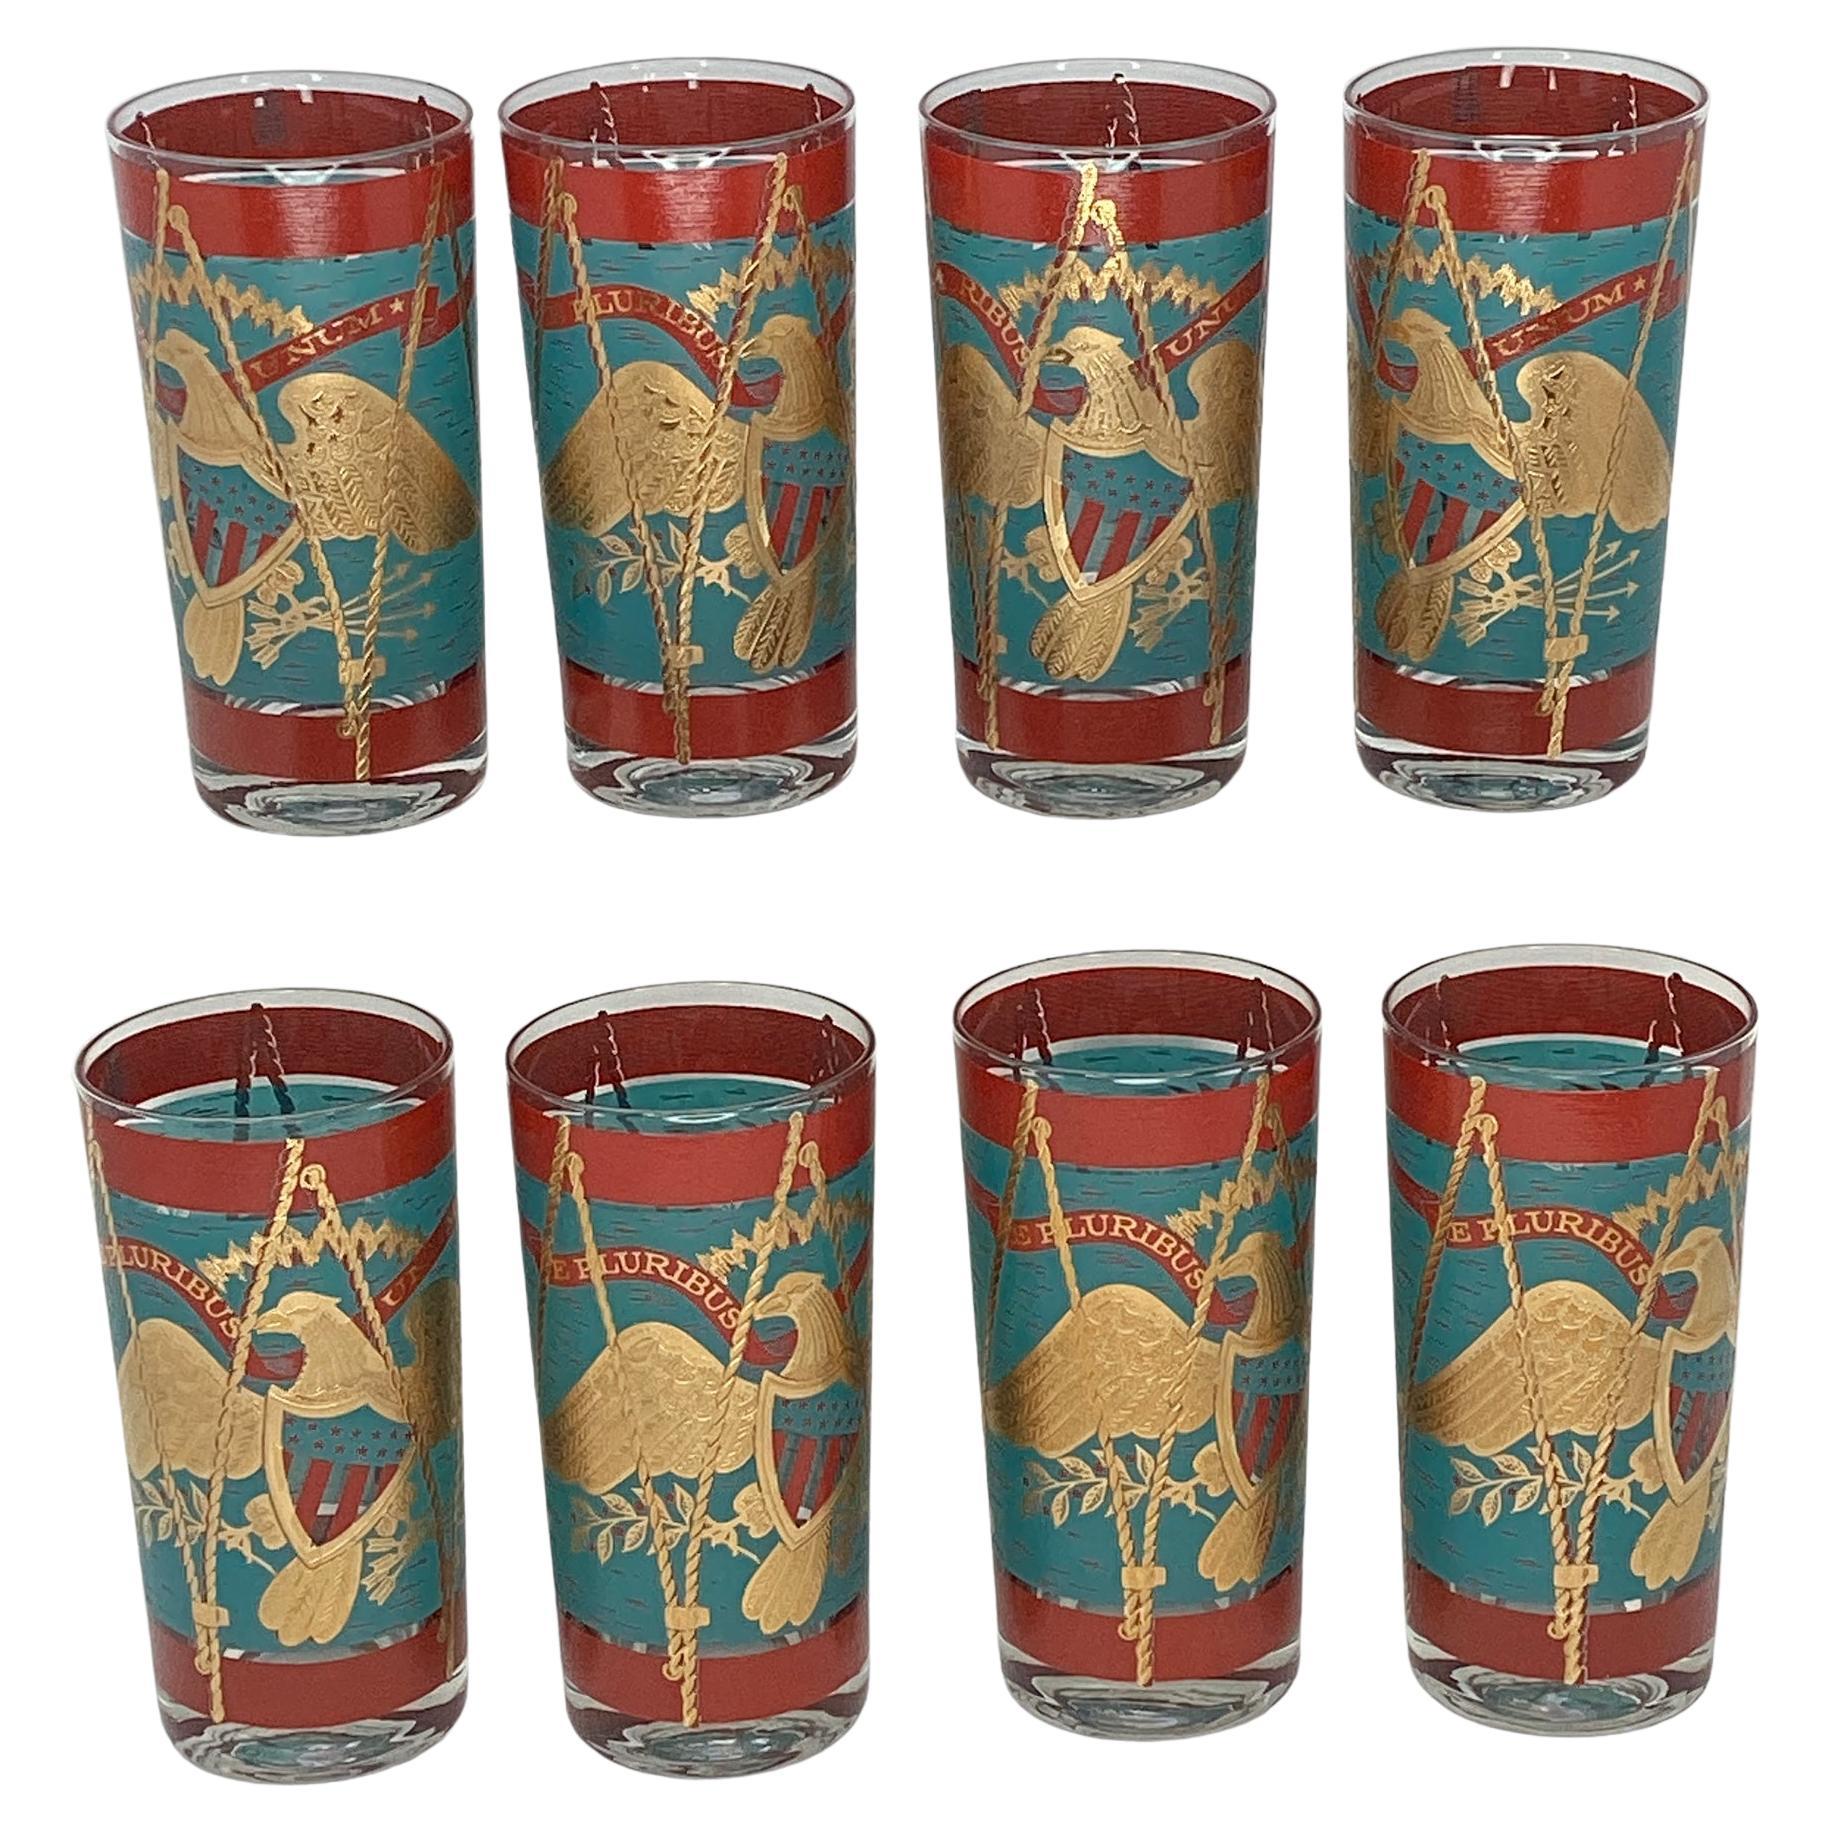 https://a.1stdibscdn.com/set-of-8-vintage-cera-glassware-highball-glasses-regimental-drum-for-sale/f_73712/f_363211821695668394770/f_36321182_1695668395610_bg_processed.jpg